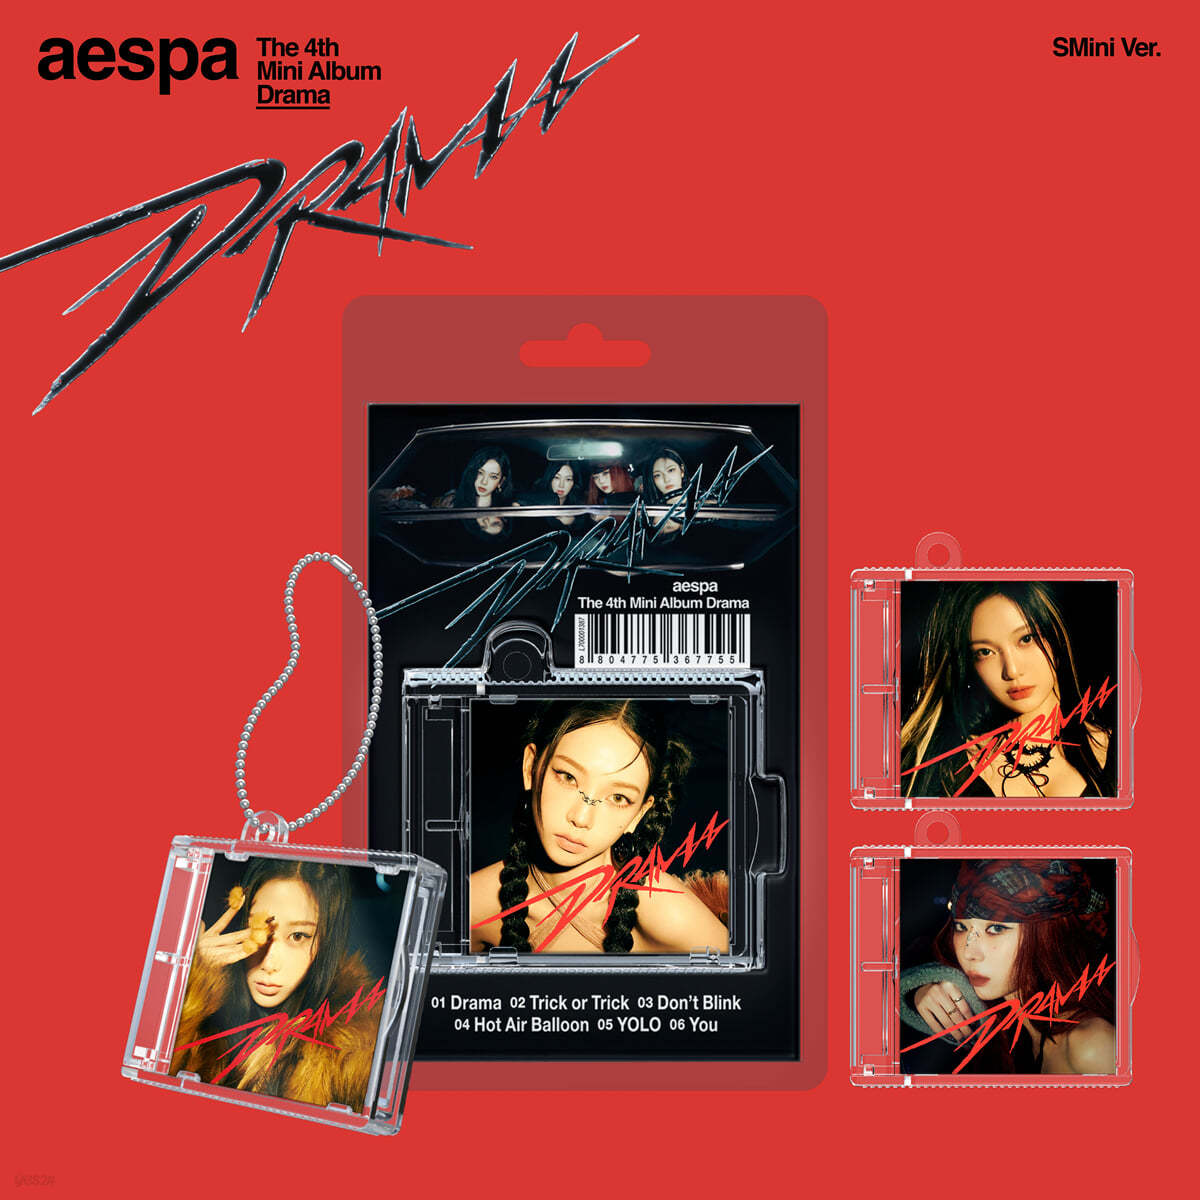 에스파 (aespa) - 미니앨범 4집 : Drama [SMini Ver.](스마트앨범) [4종 SET]